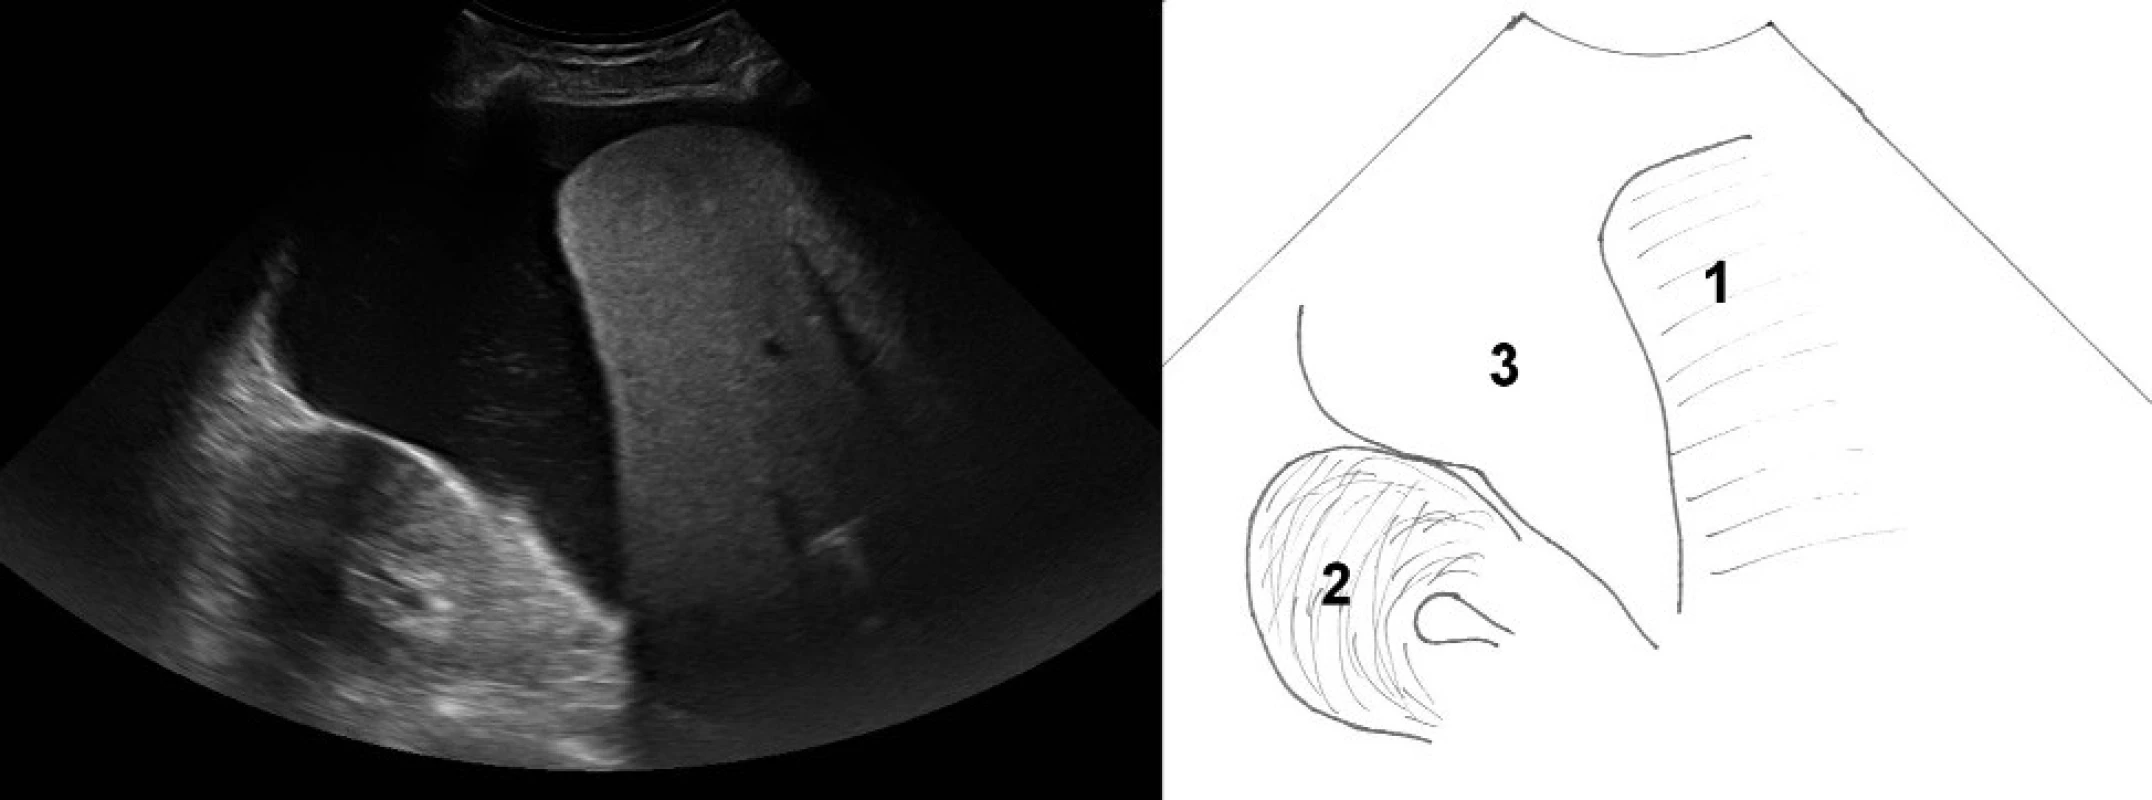 Zobrazení pravého hypochondria. 1 – pravý lalok jater, 2 – kůra pravé ledviny, 3 – anechogenní volná tekutina (v tomto případě ascites) separující prostor mezi játry a ledvinou